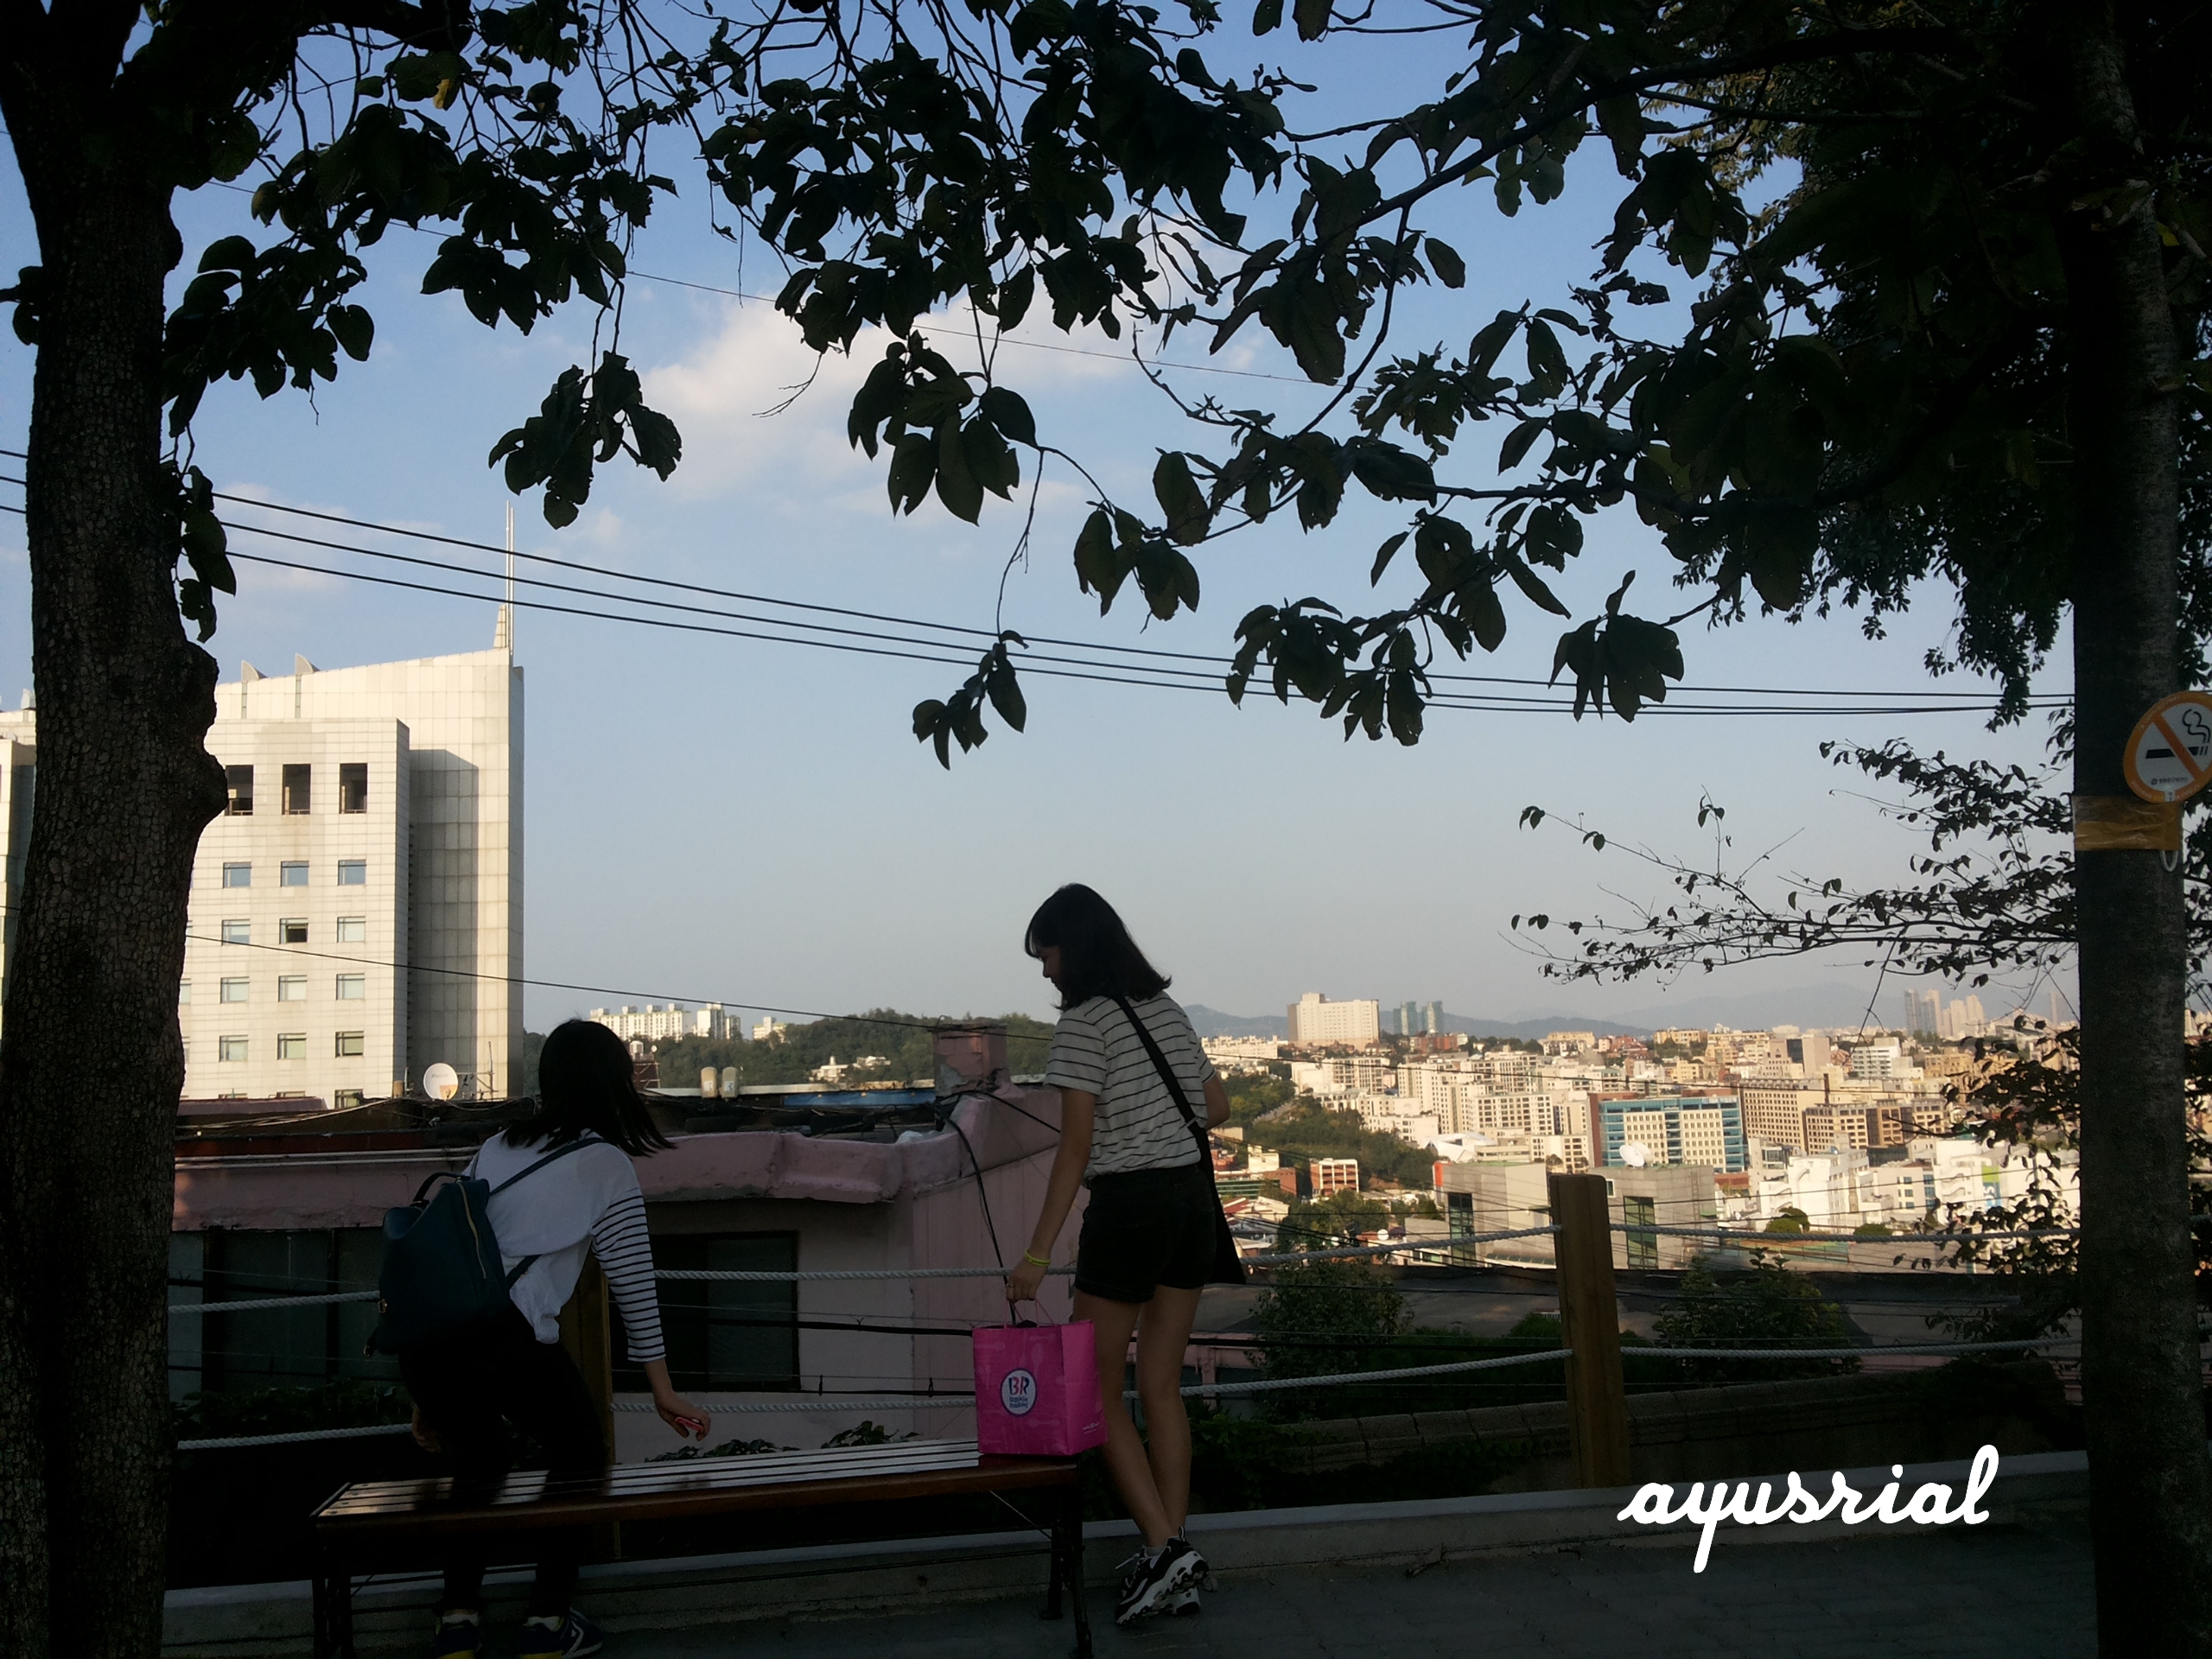 Seoul in Summer